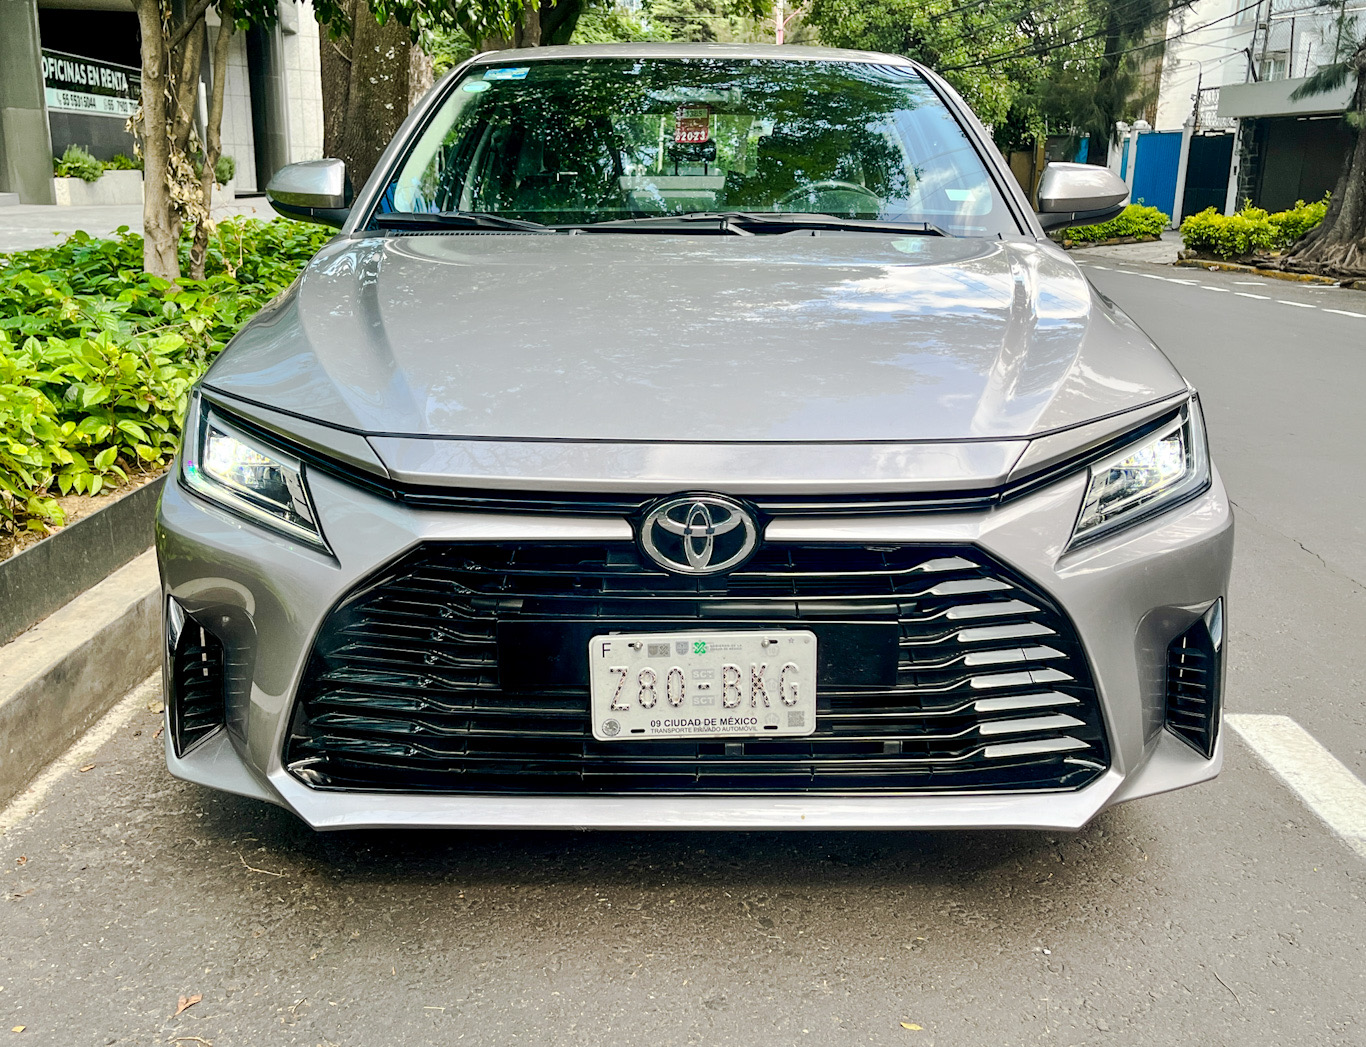 Toyota Yaris Sedán, confiabilidad y economía